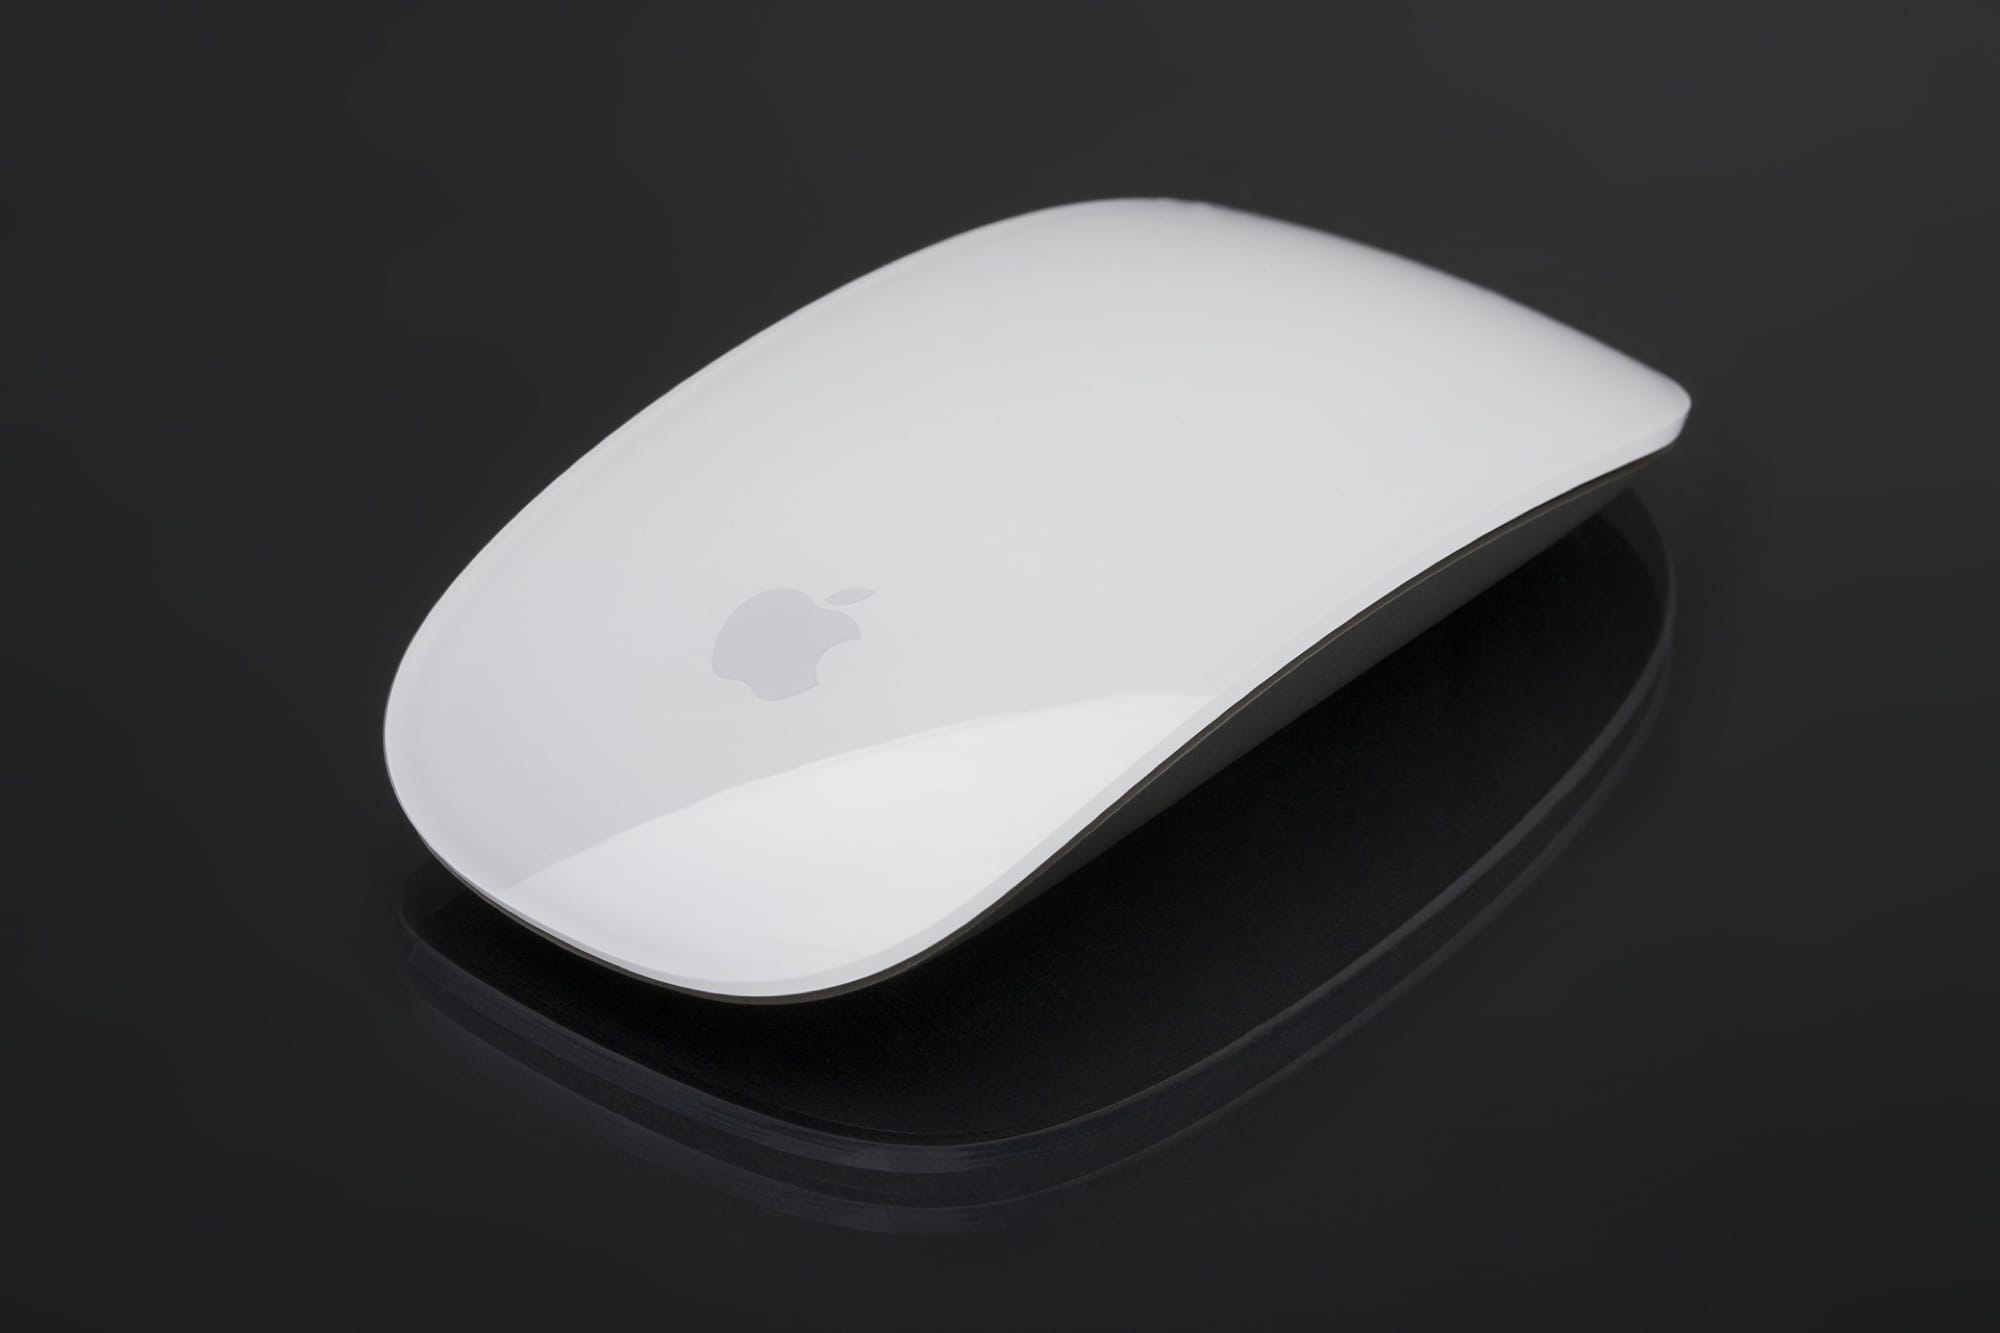 Cómo desactivar automáticamente el trackpad cuando se conecta un ratón en el Mac